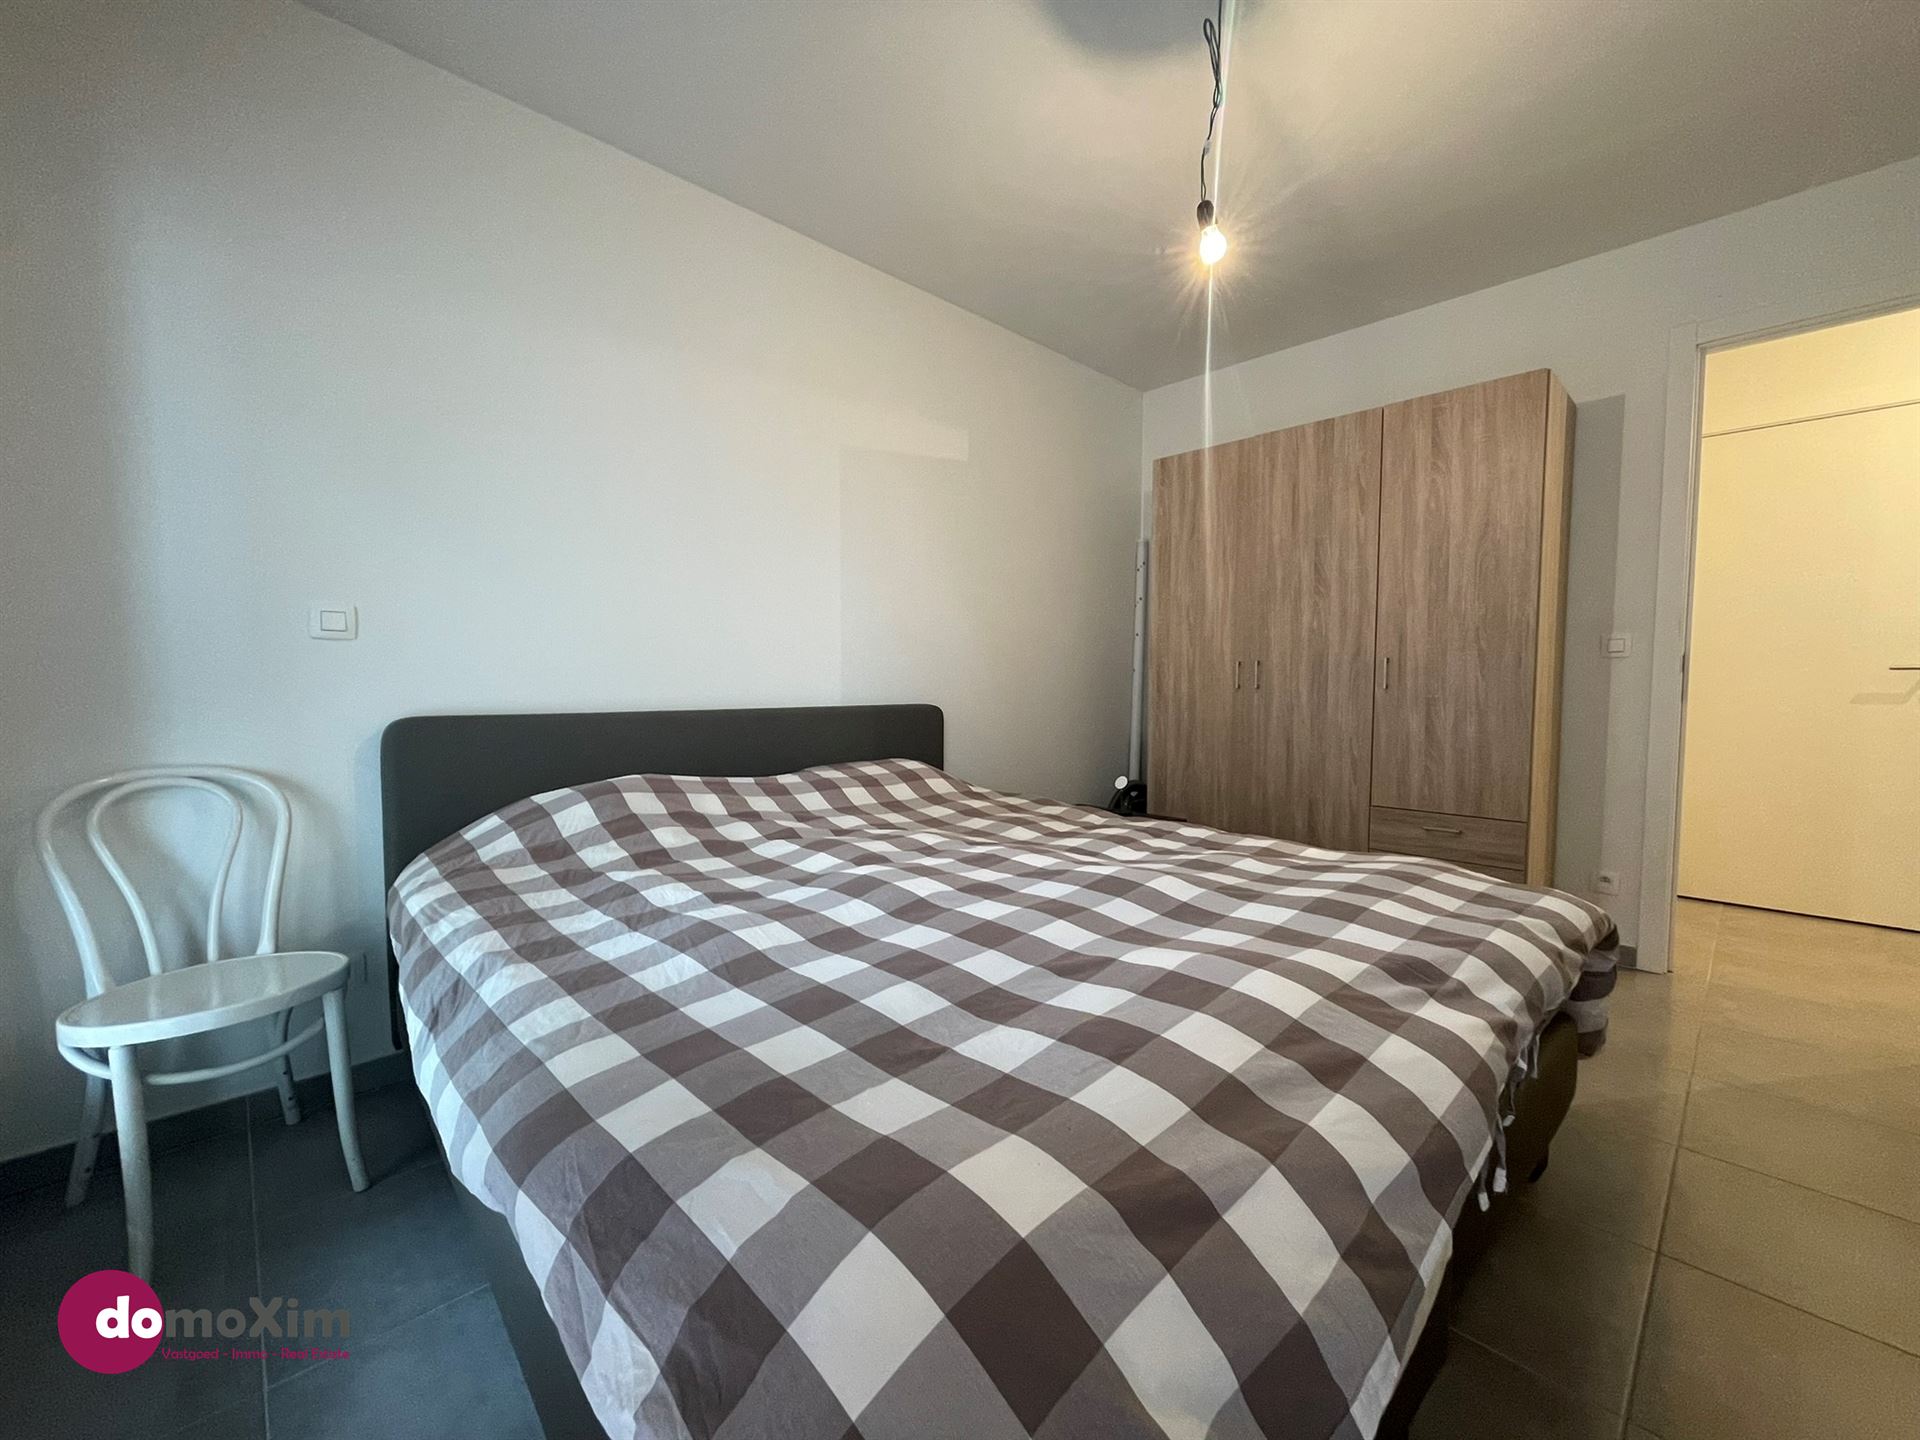 Lichtrijk appartement met 2 slaapkamers in hartje Boortmeerbeek foto 11